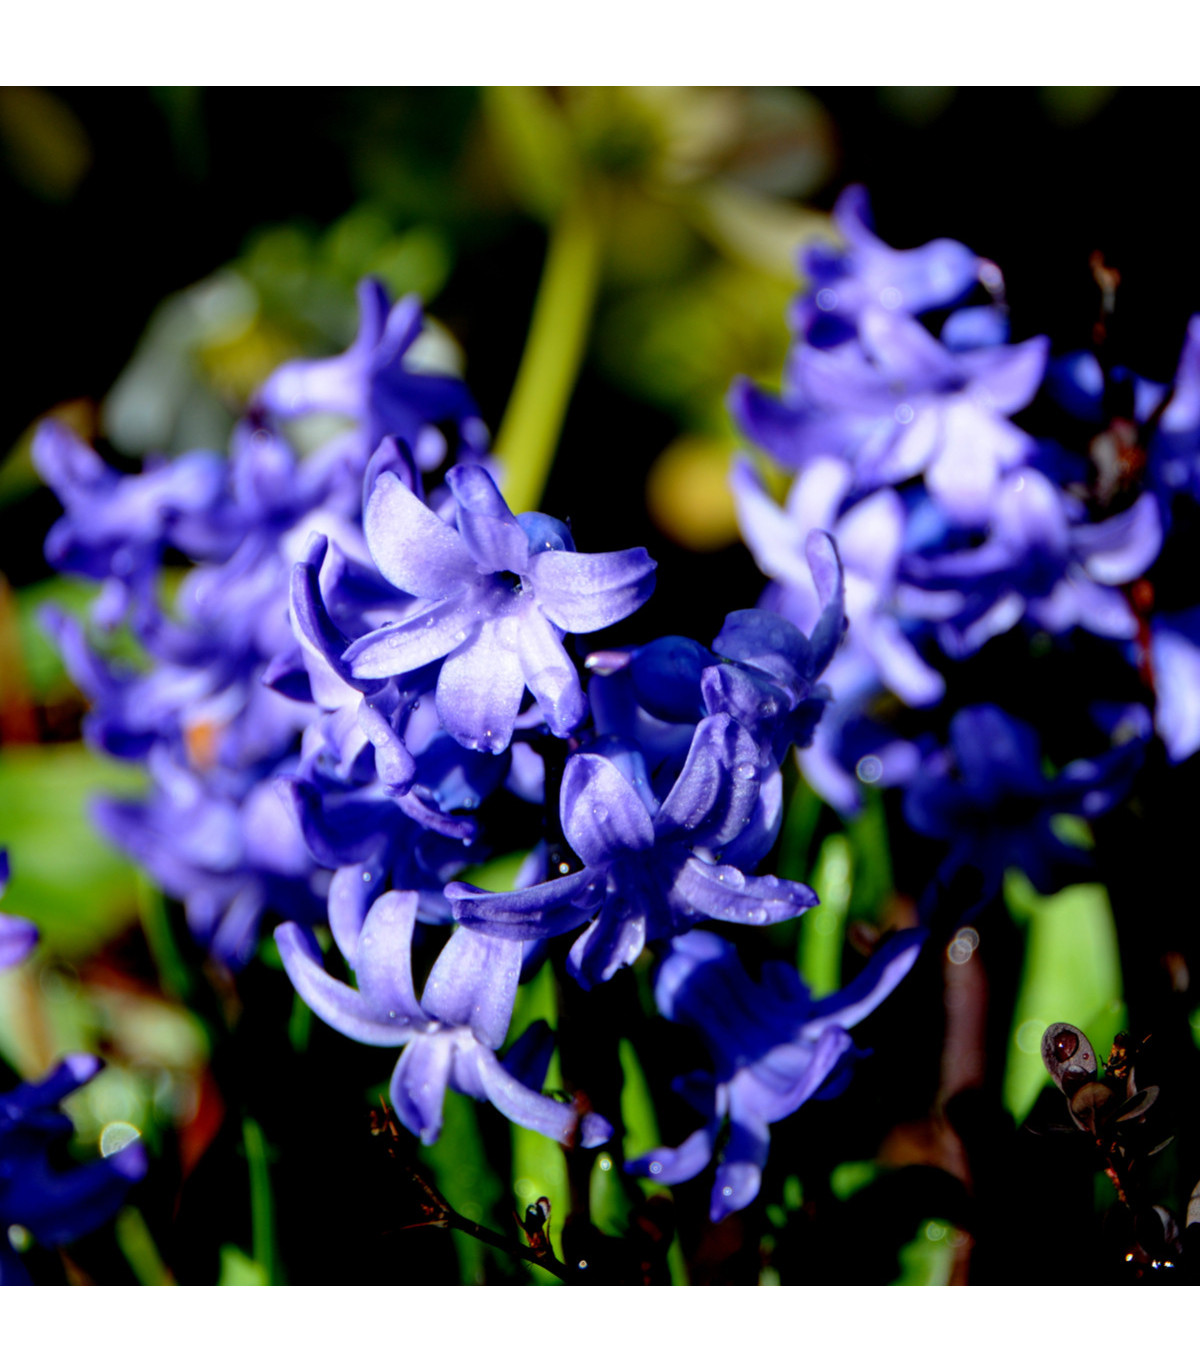 Holandské cibuloviny - Hyacint temně modrý Delft Blue - hyacinty - 1 ks